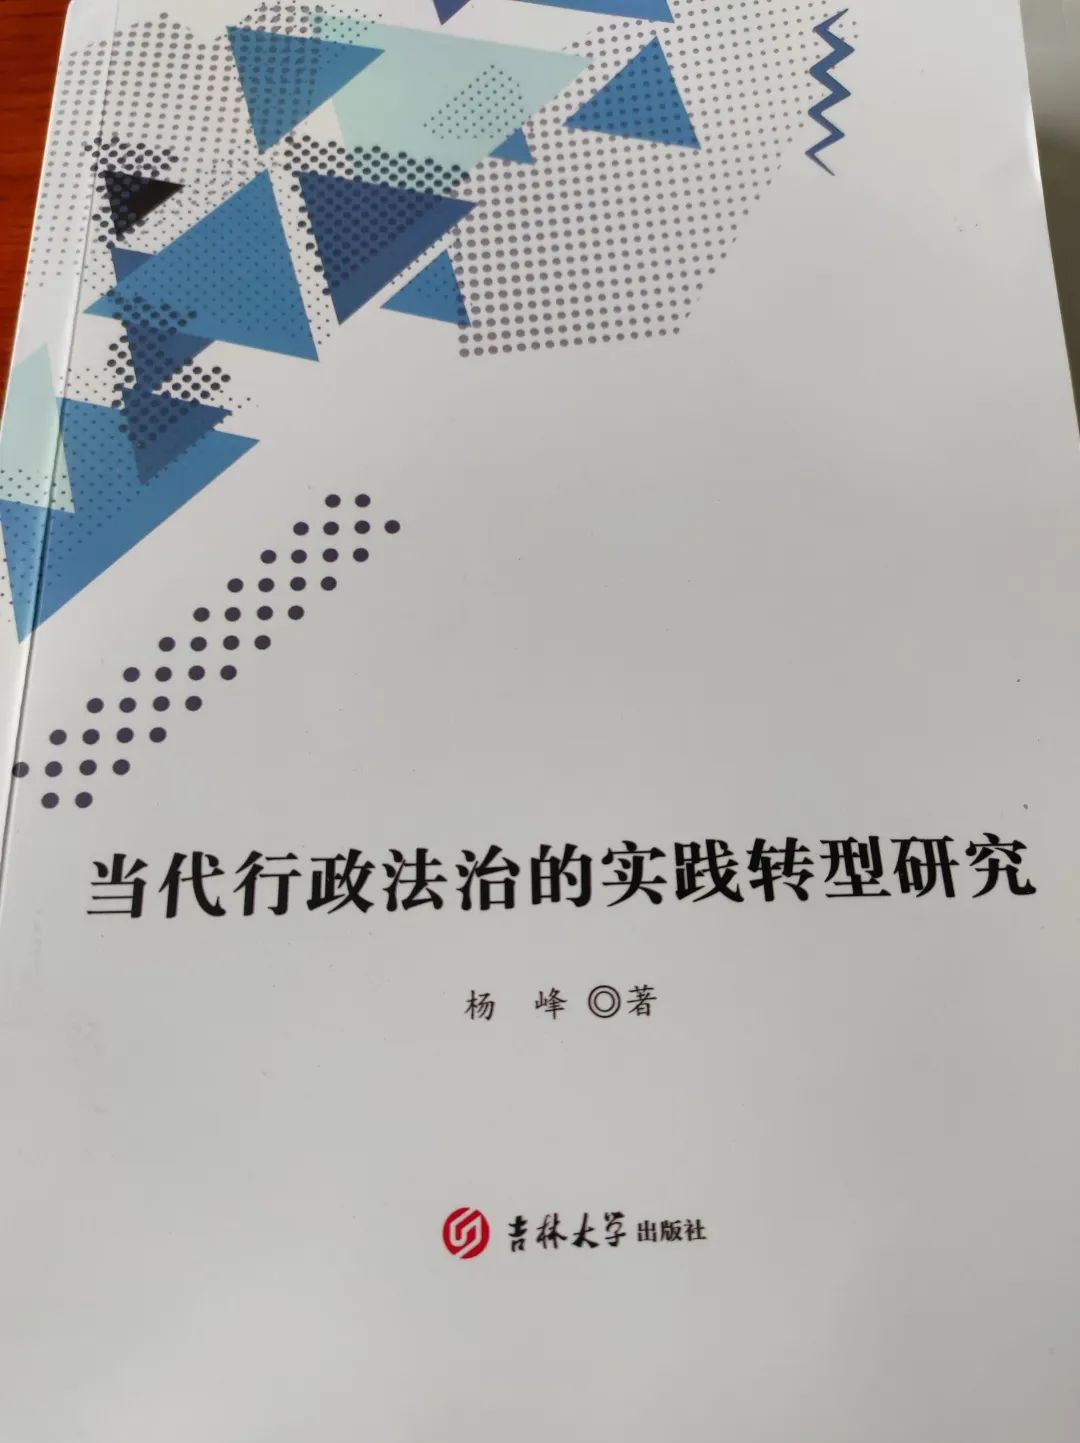 《当代行政法治的实践转型研究》正式发行 杨勇律师担任副主编